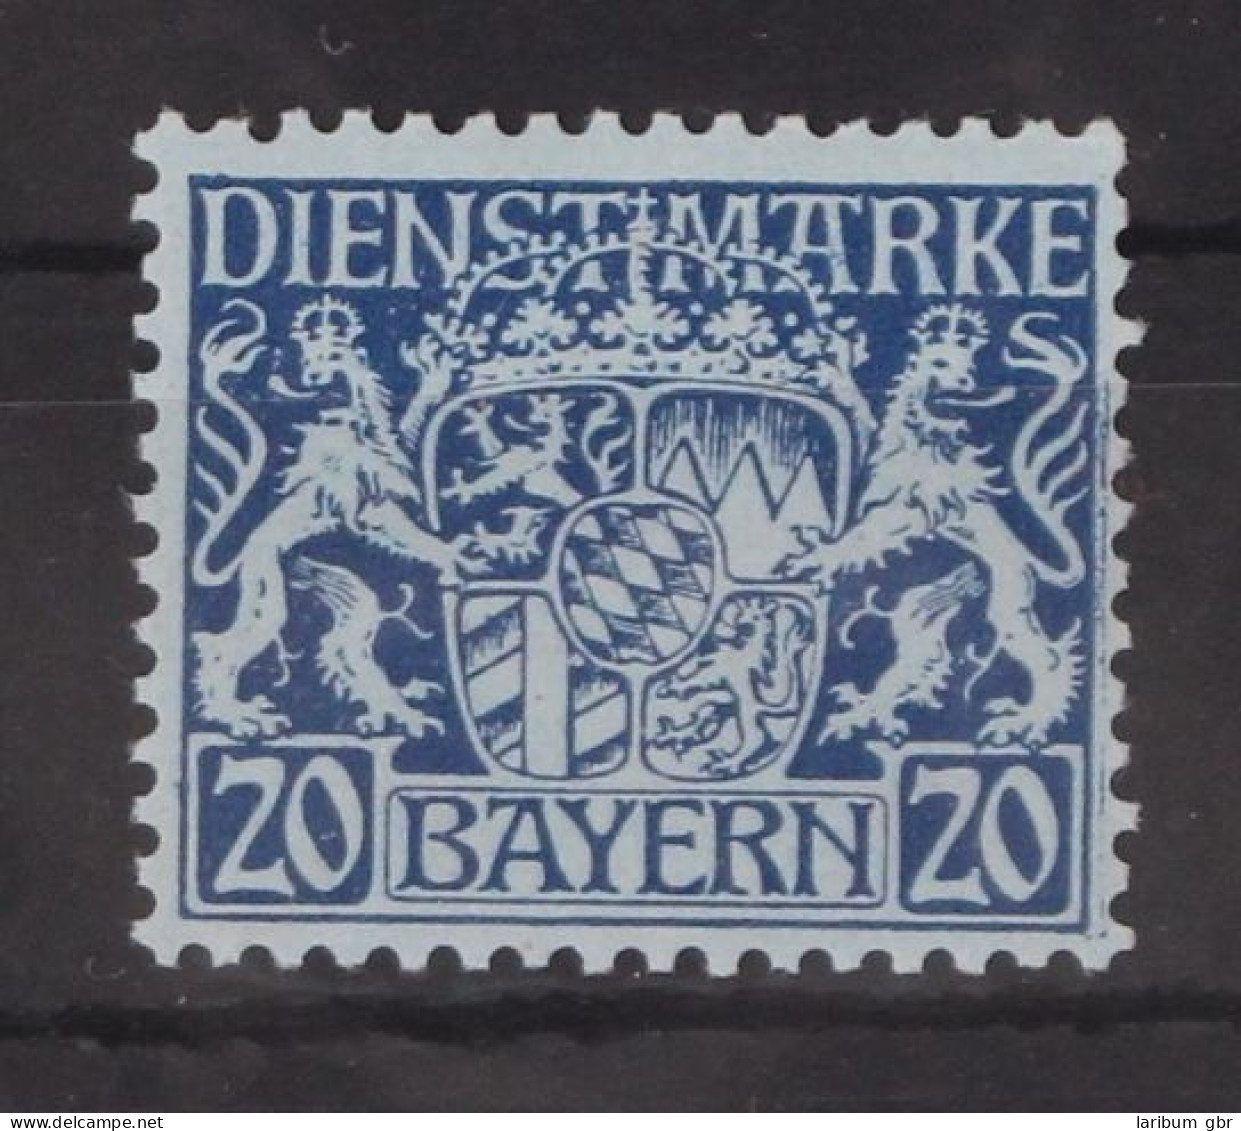 Bayern Dienstmarken 20 Postfrisch #GM097 - Nuovi